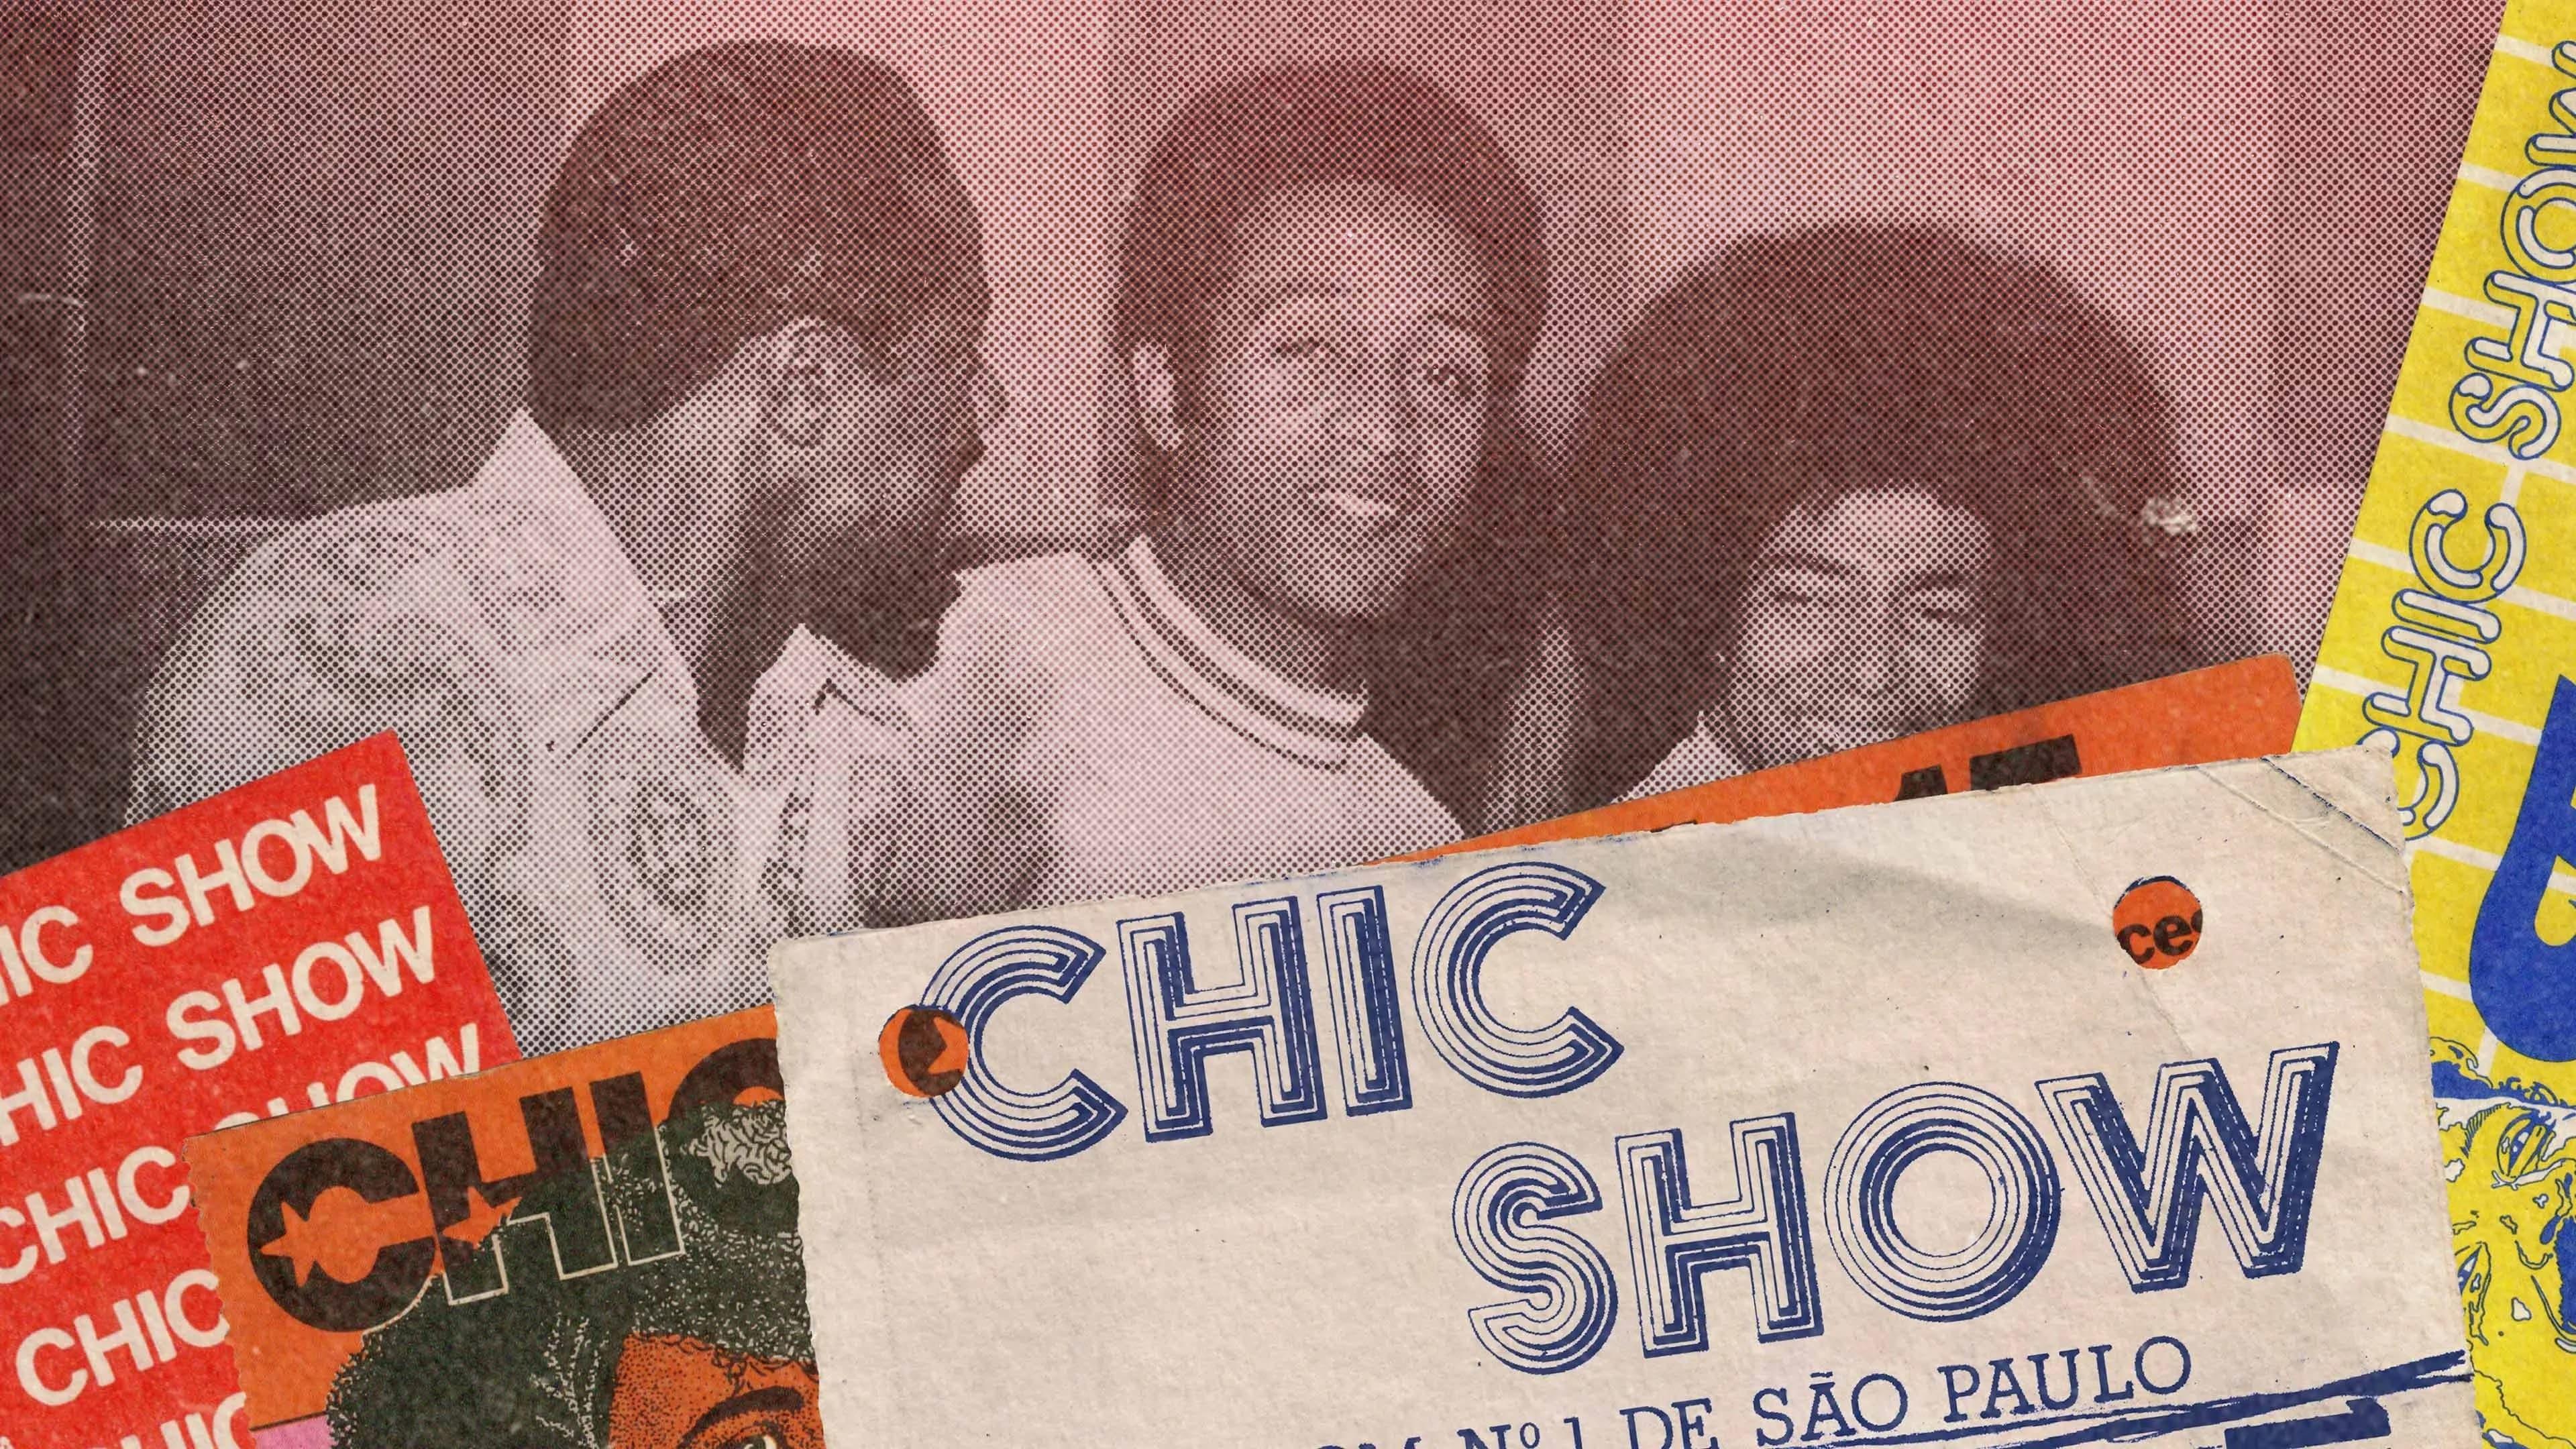 Luizão Chic Show backdrop